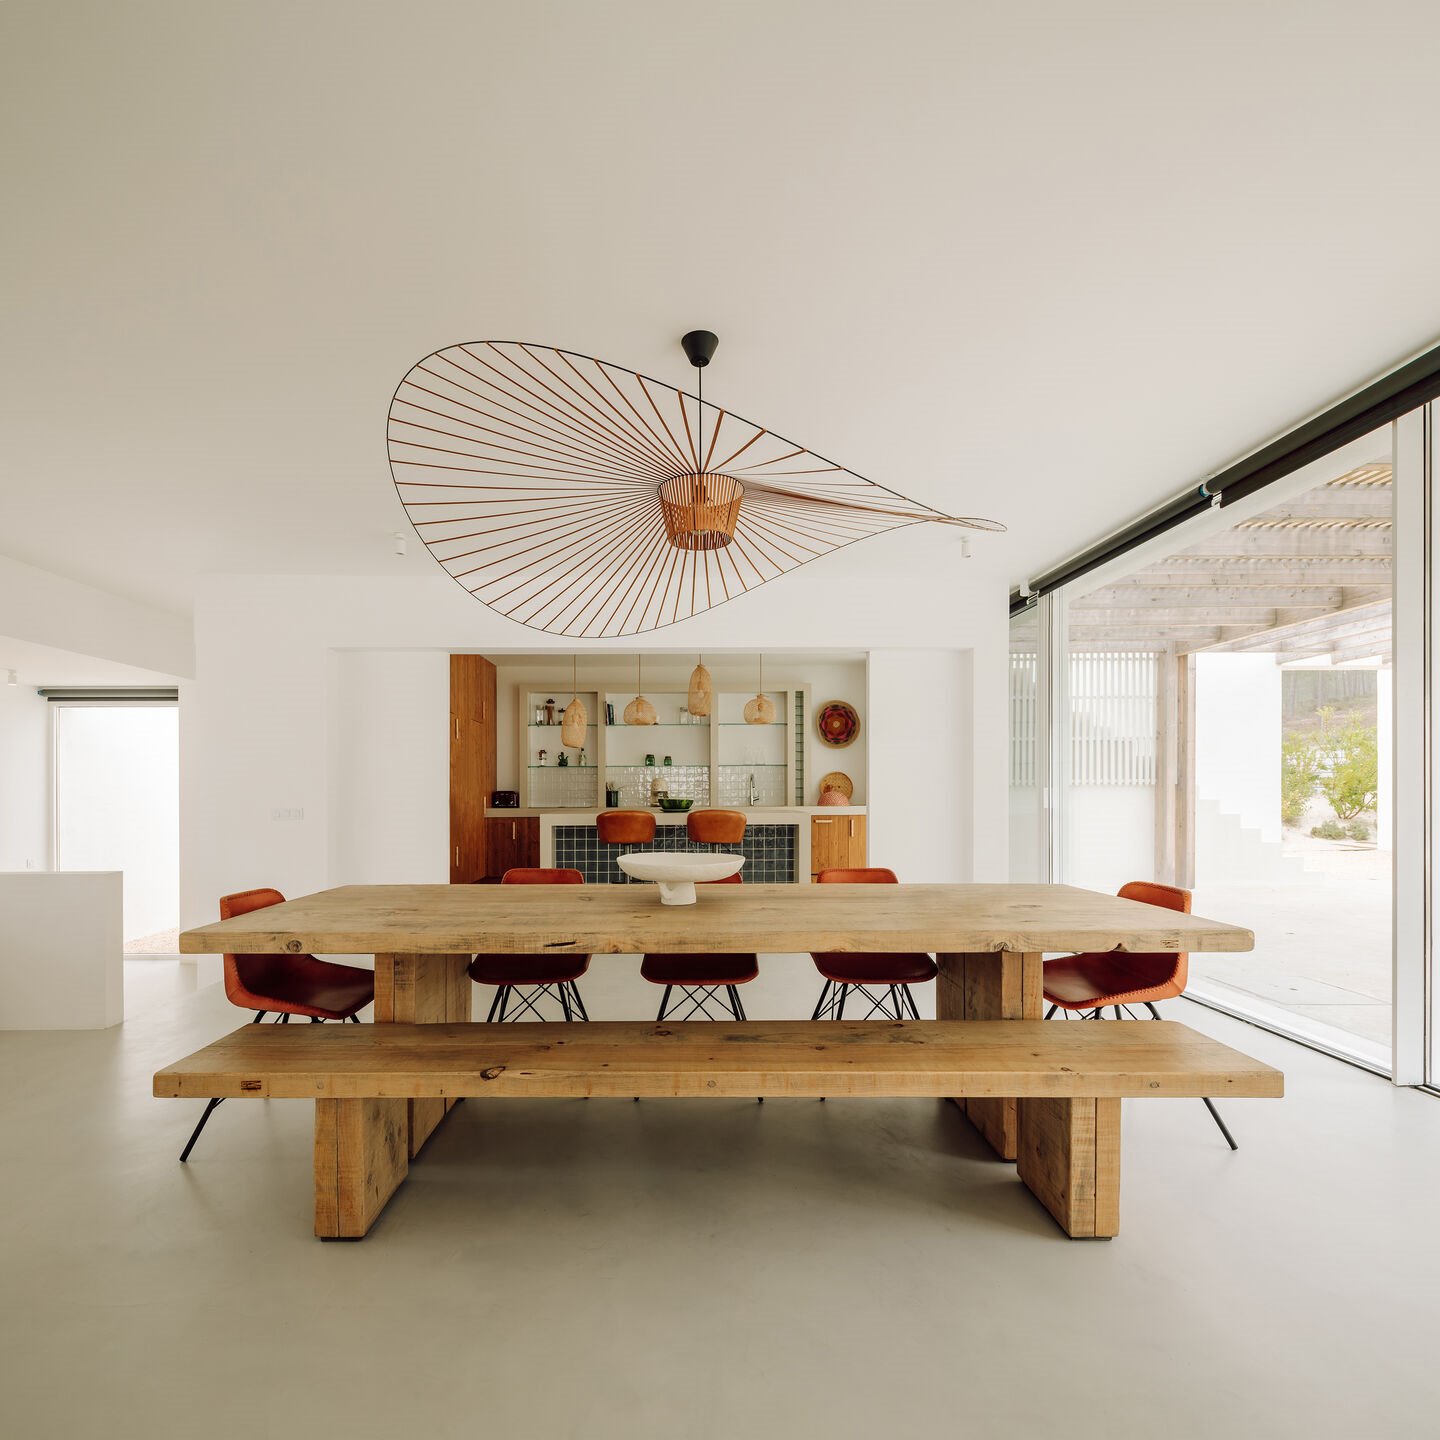 Casa moderna en Portugal de color blanco en Comporta comedor banco de madera